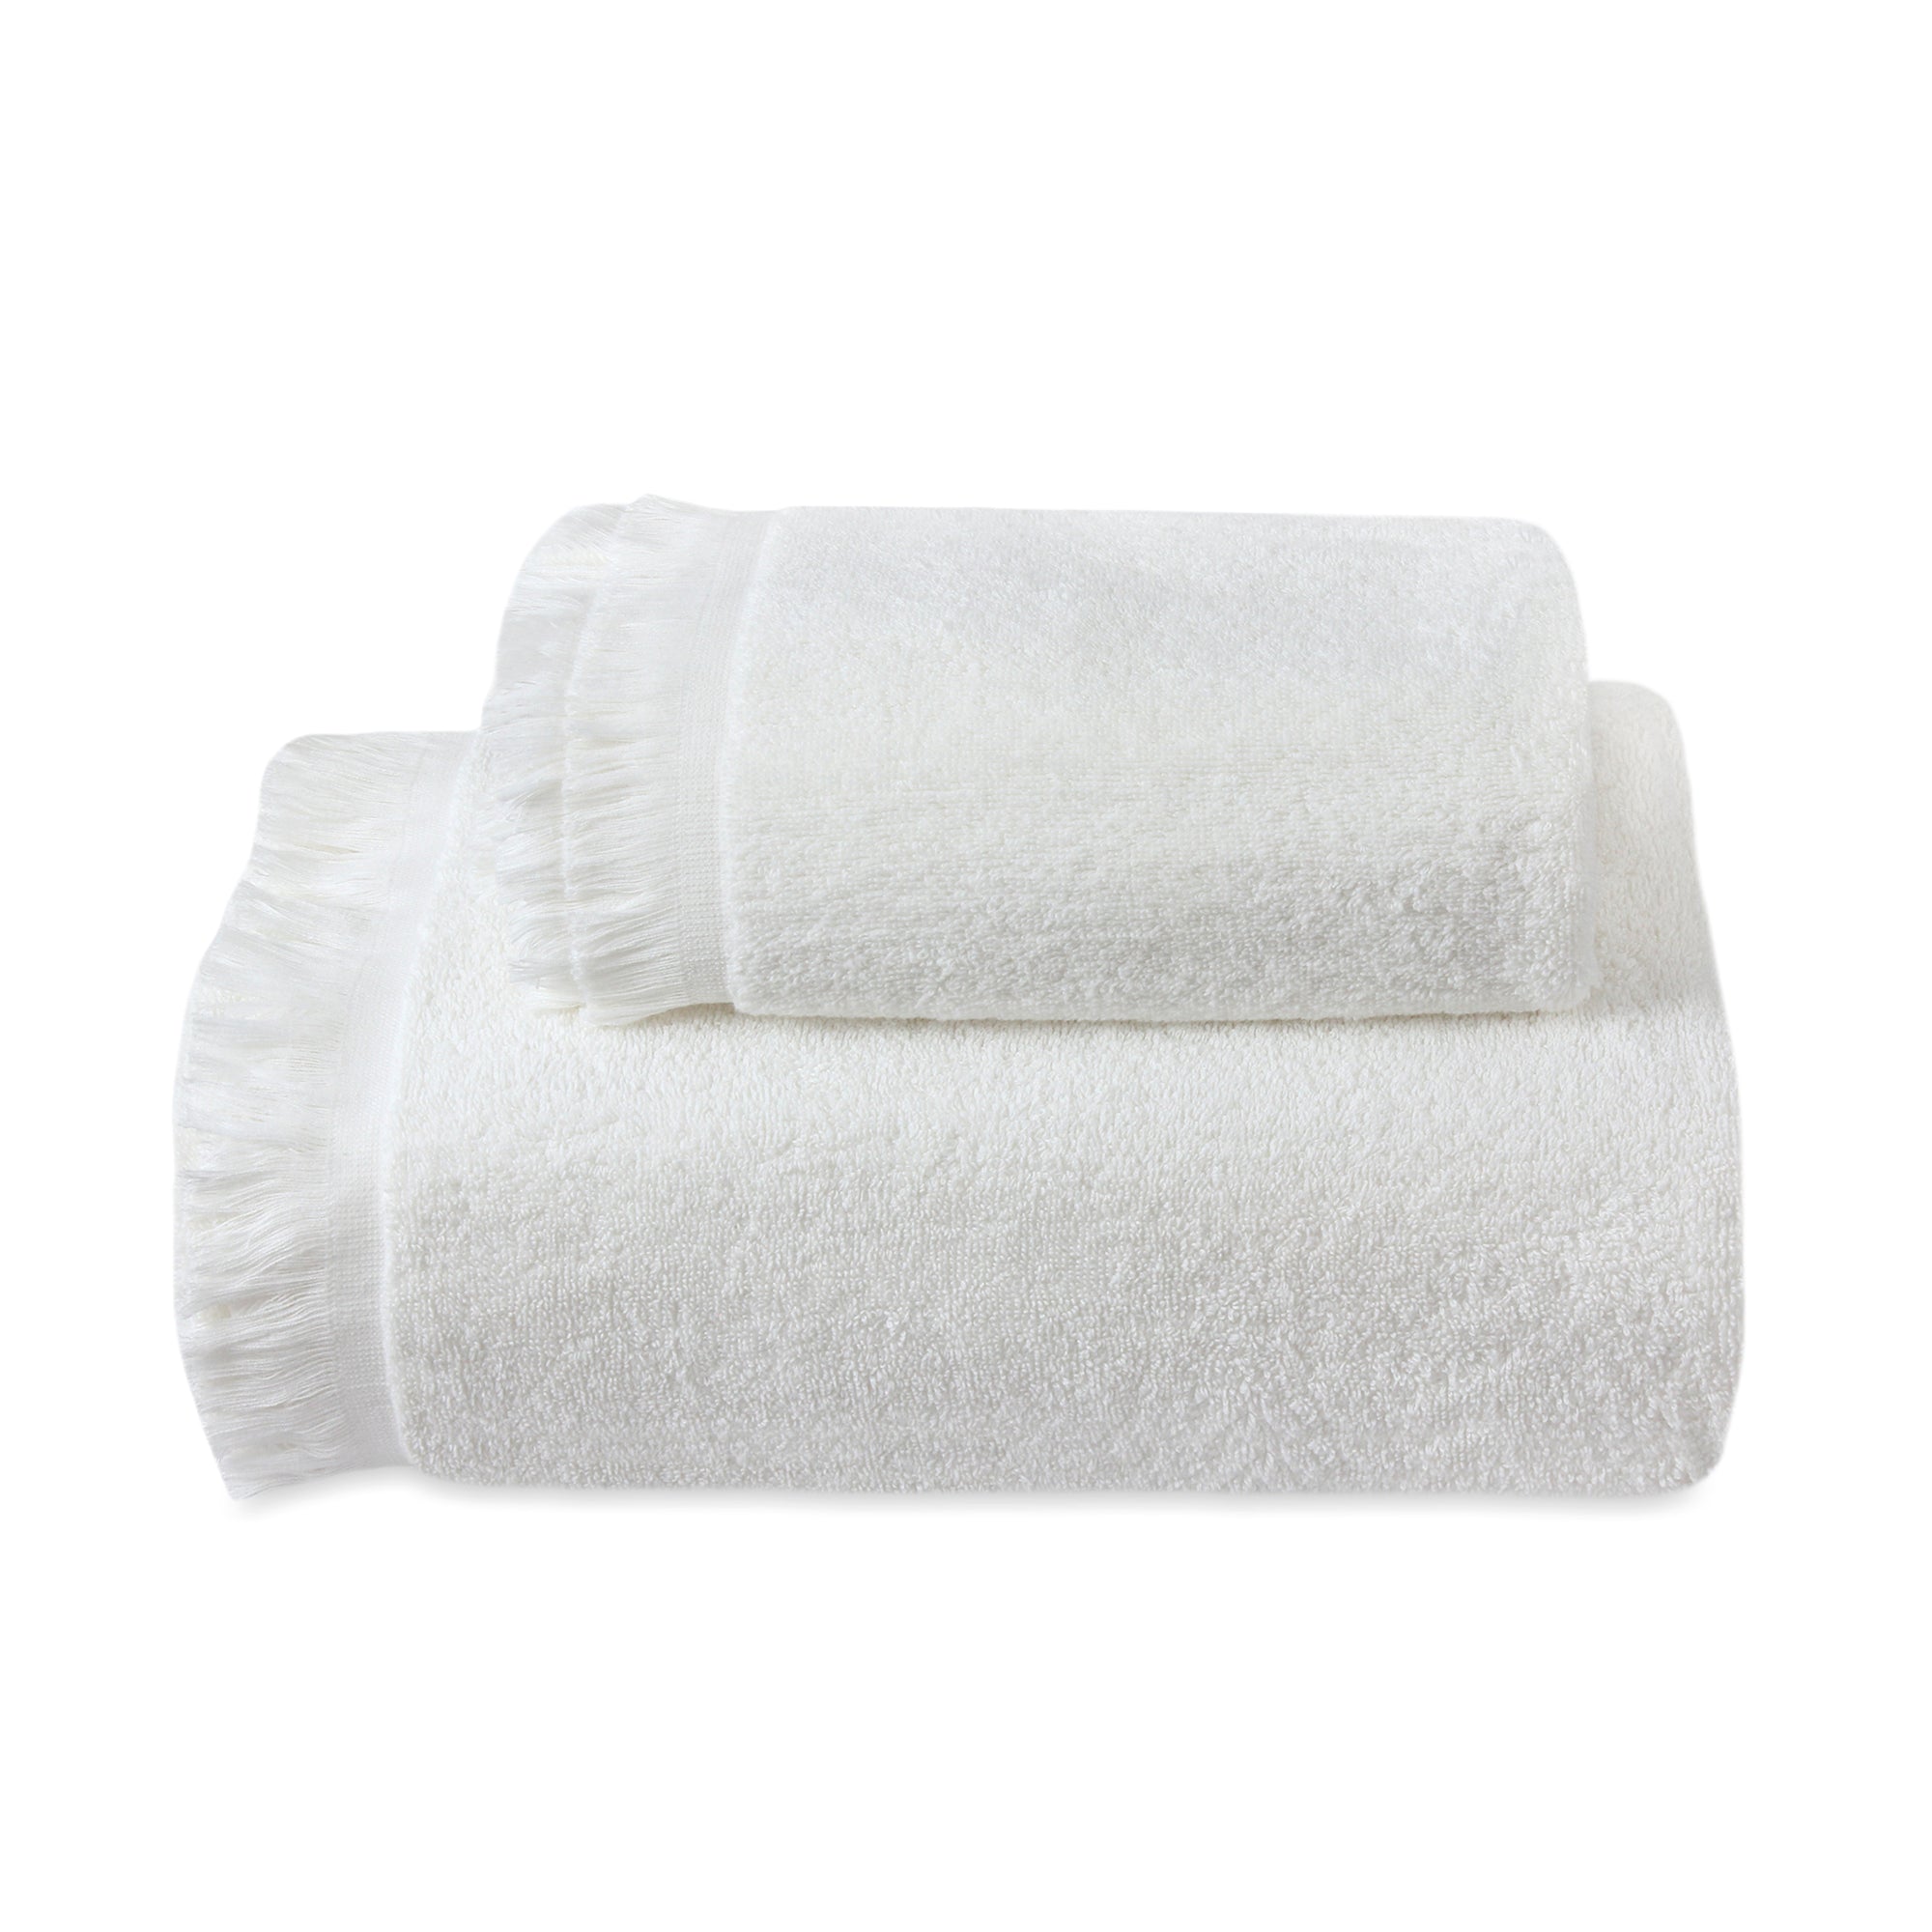 Off-White Fringe Bath Towel Set